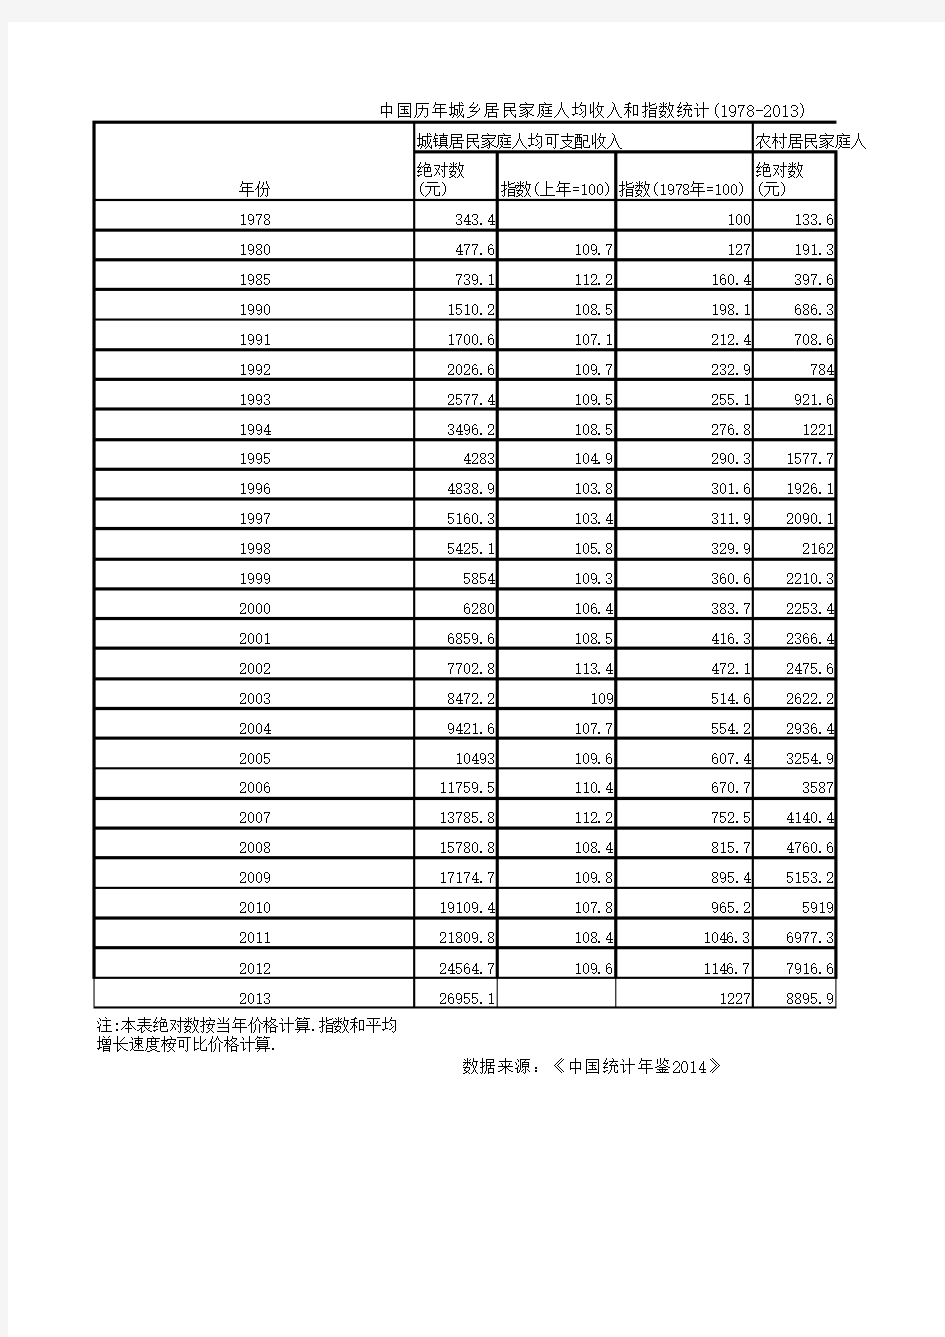 中国历年城乡居民家庭人均收入和指数统计(1978-)知识分享